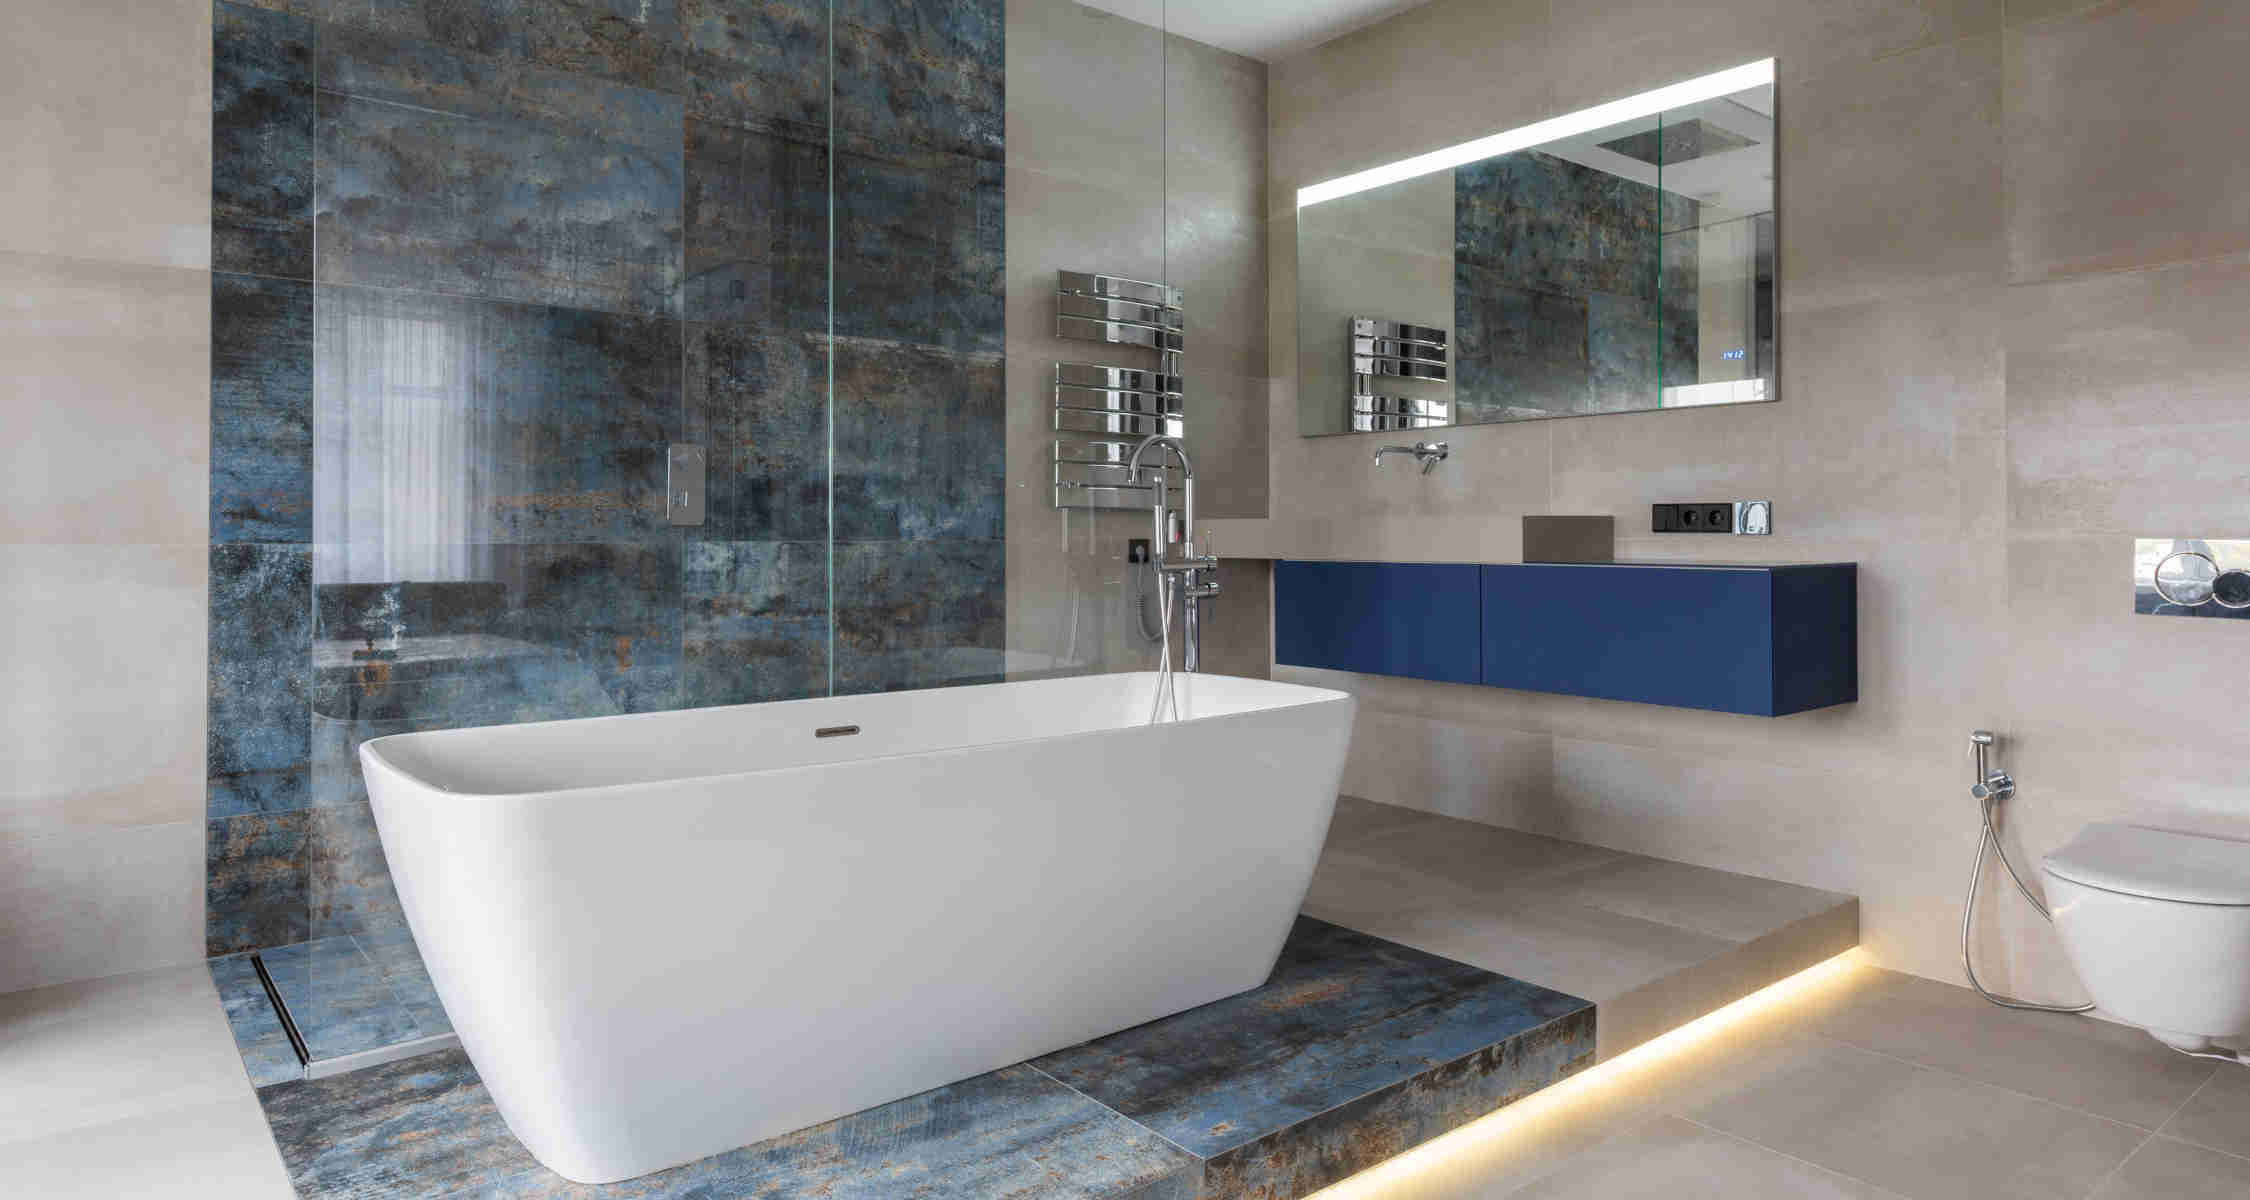 Baño mitad azulejo mitad pintado: ventajas y desventajas – RUBI Blog ES